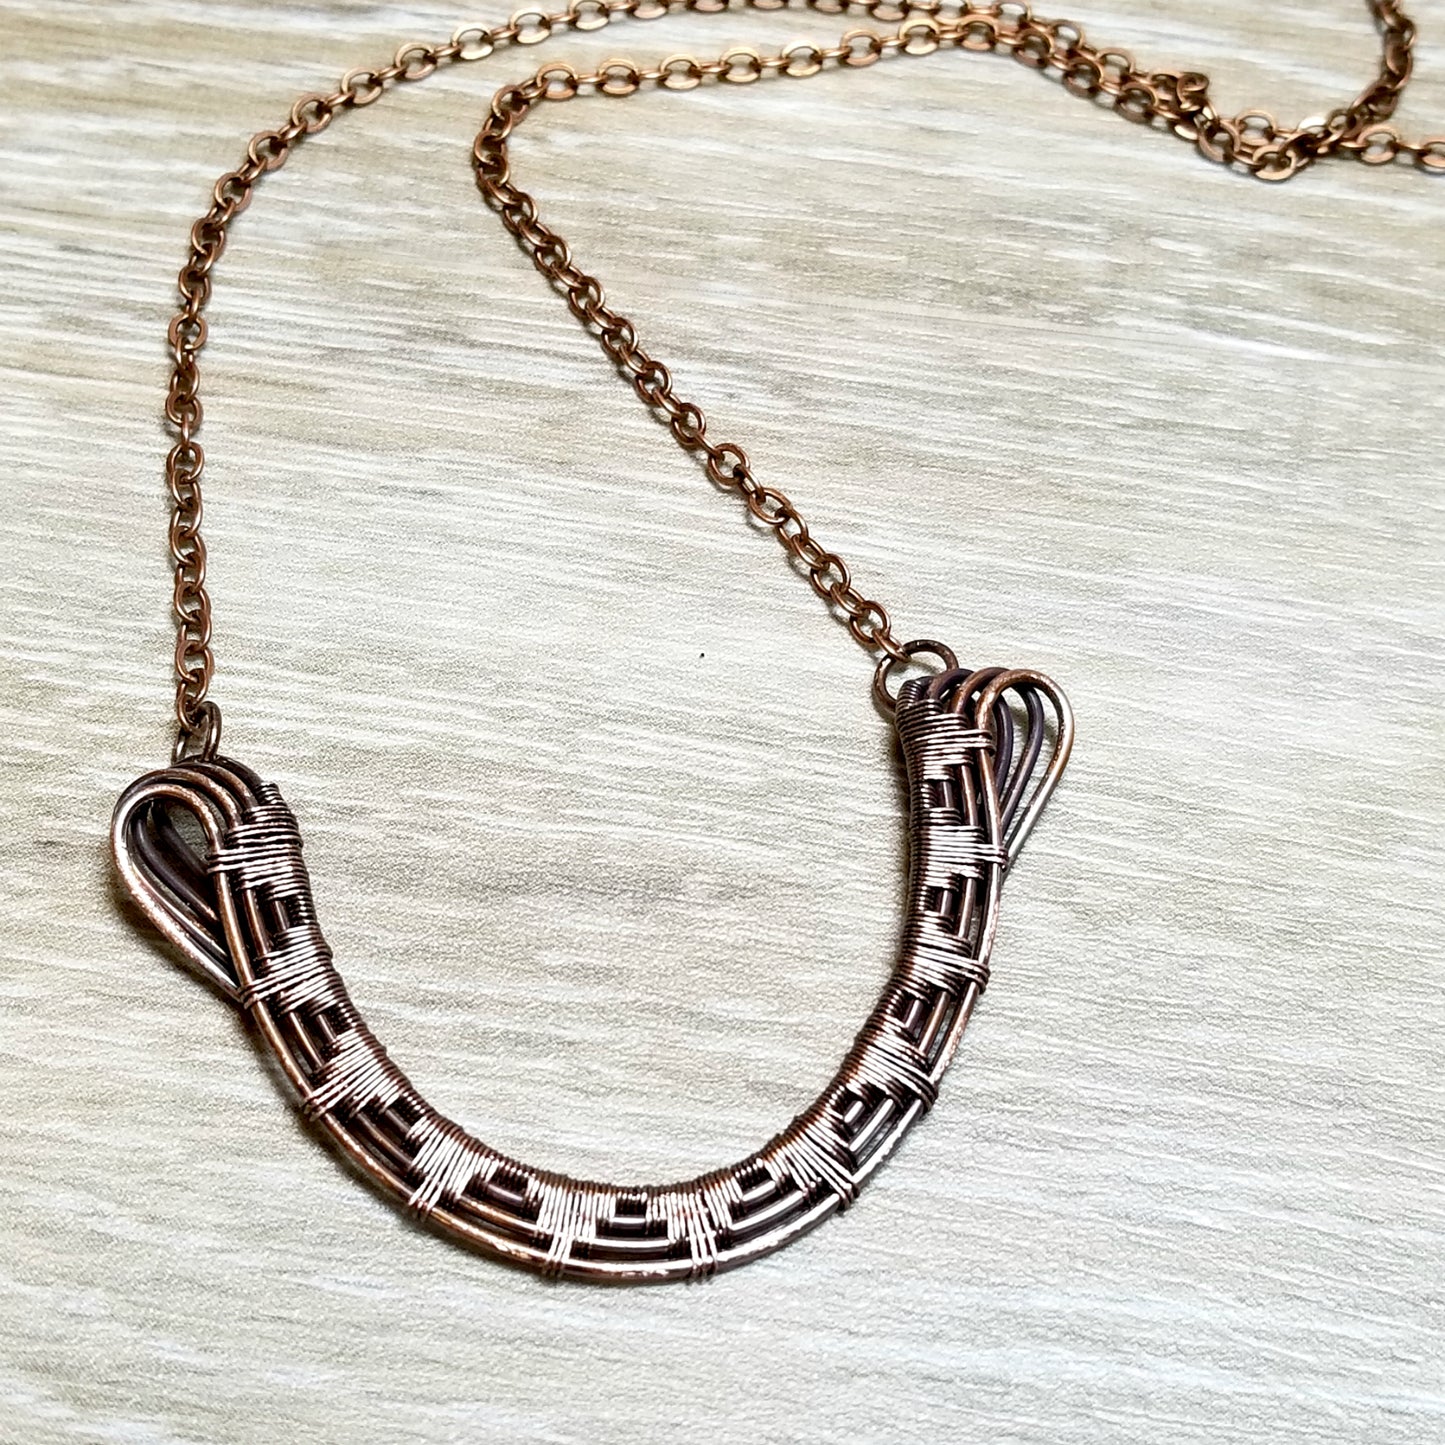 Sunburst Necklace Earring Set, Wire Weave Jewelry